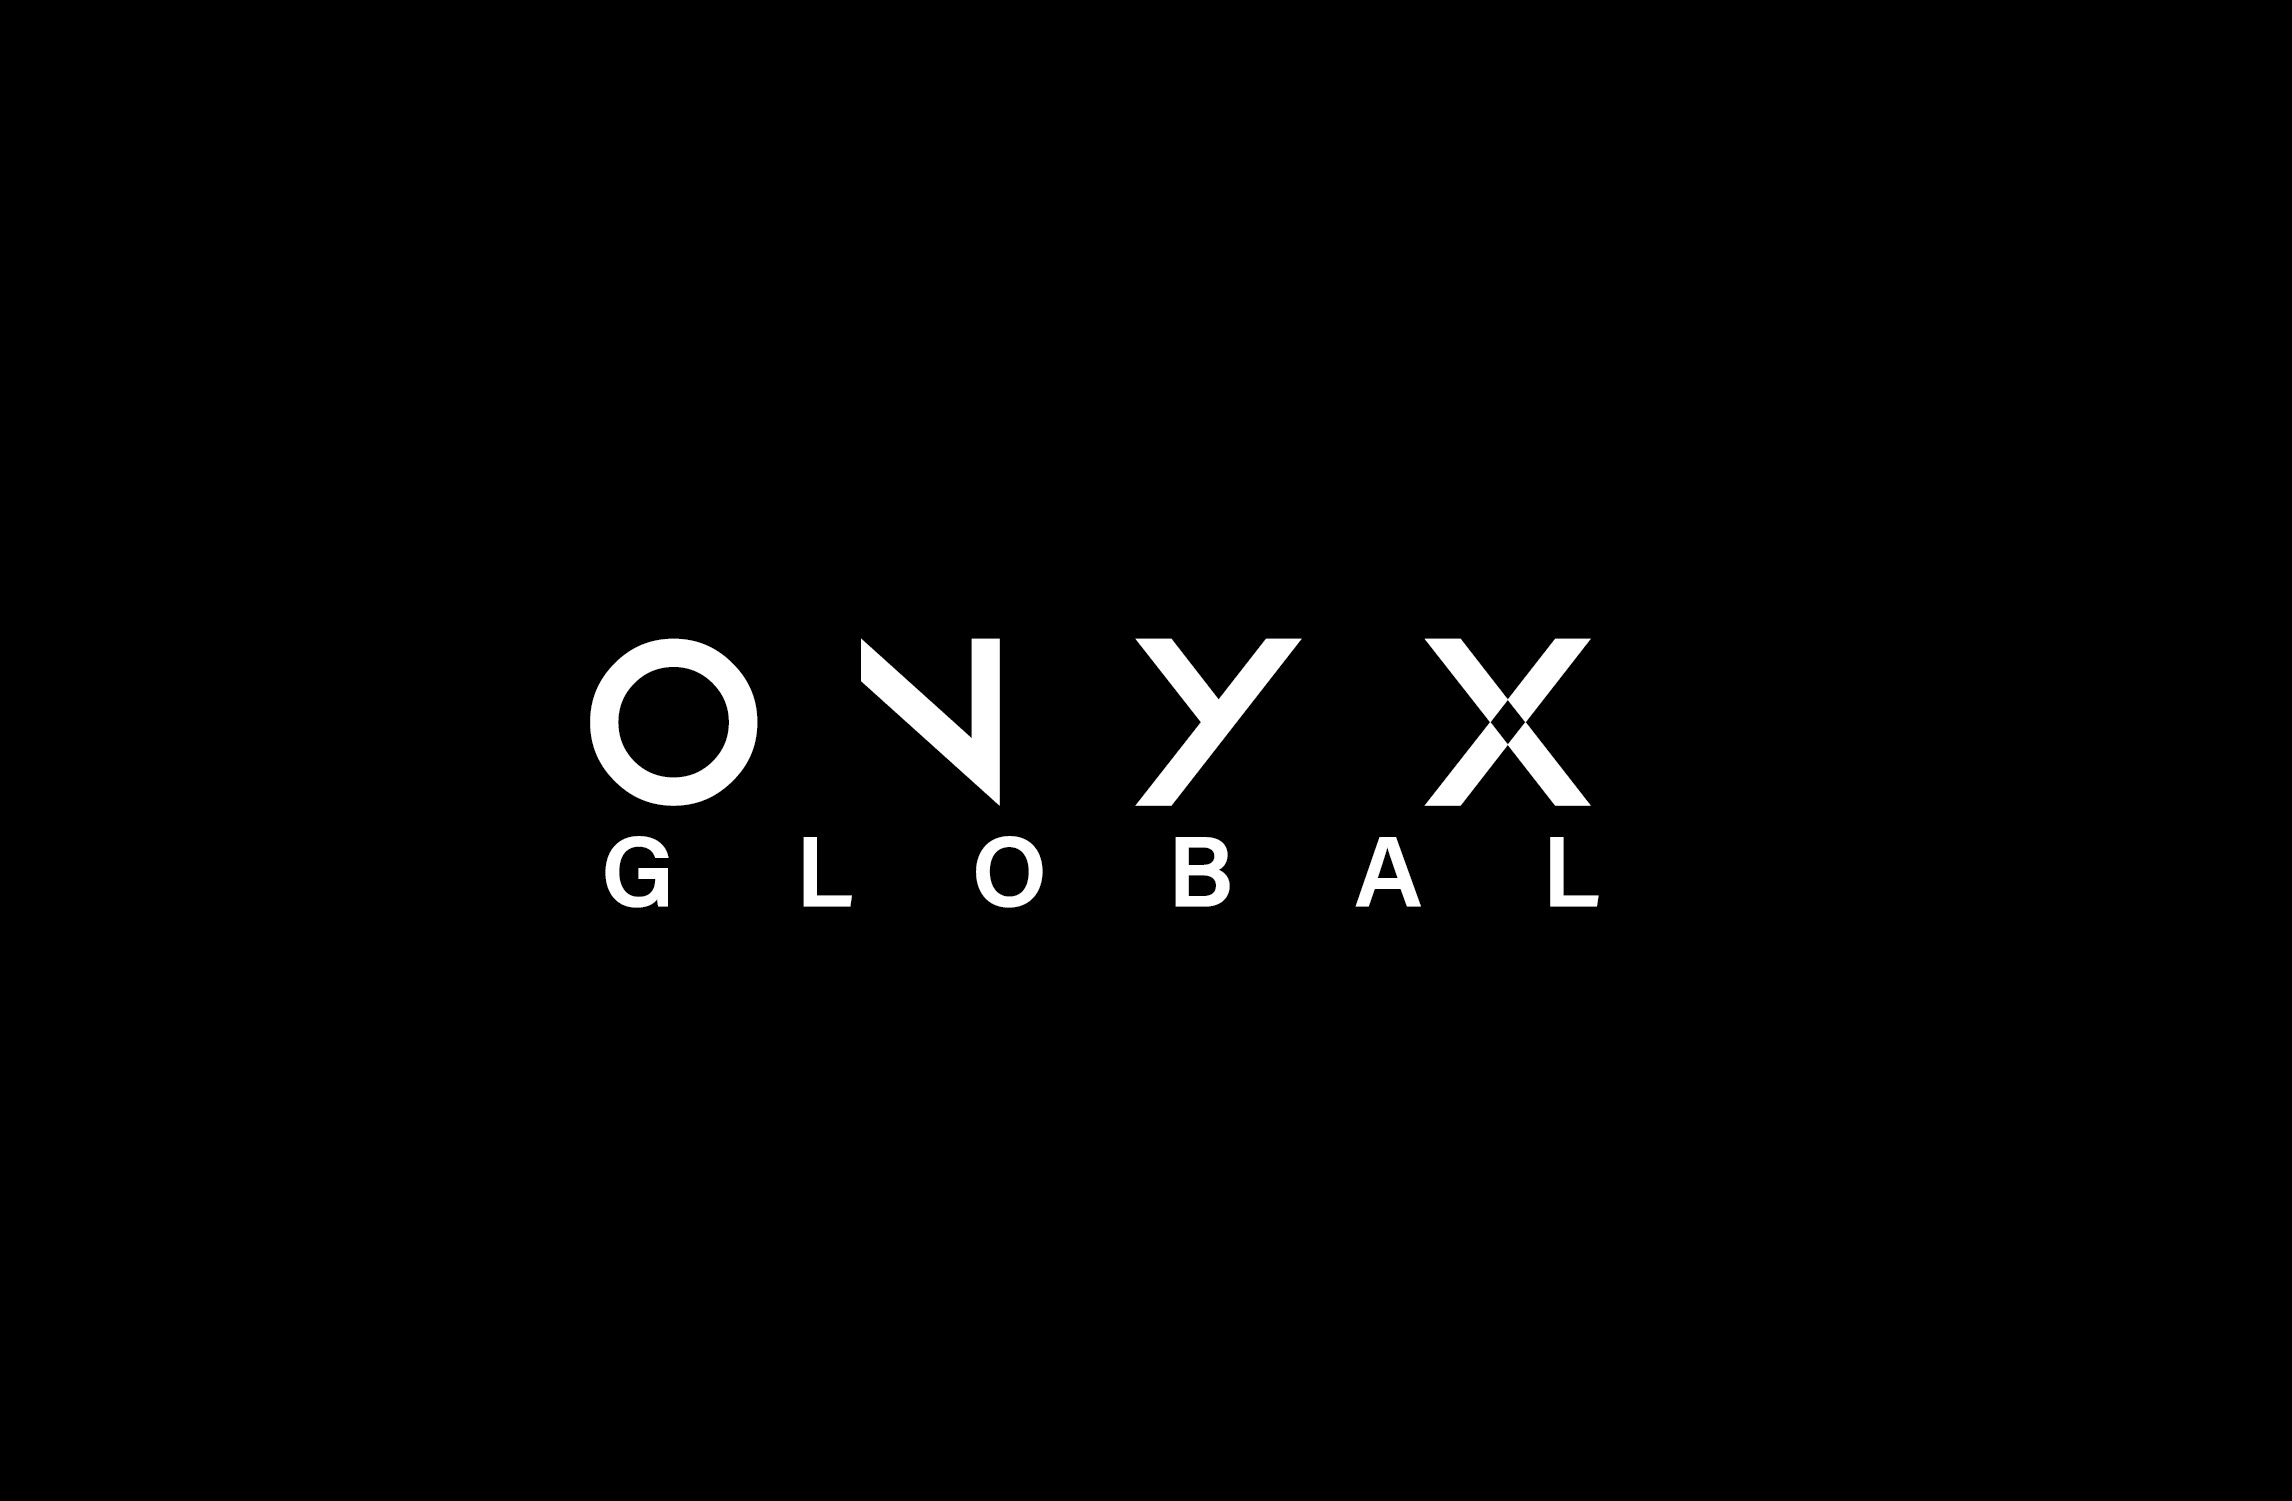 Onyx Global, LLC